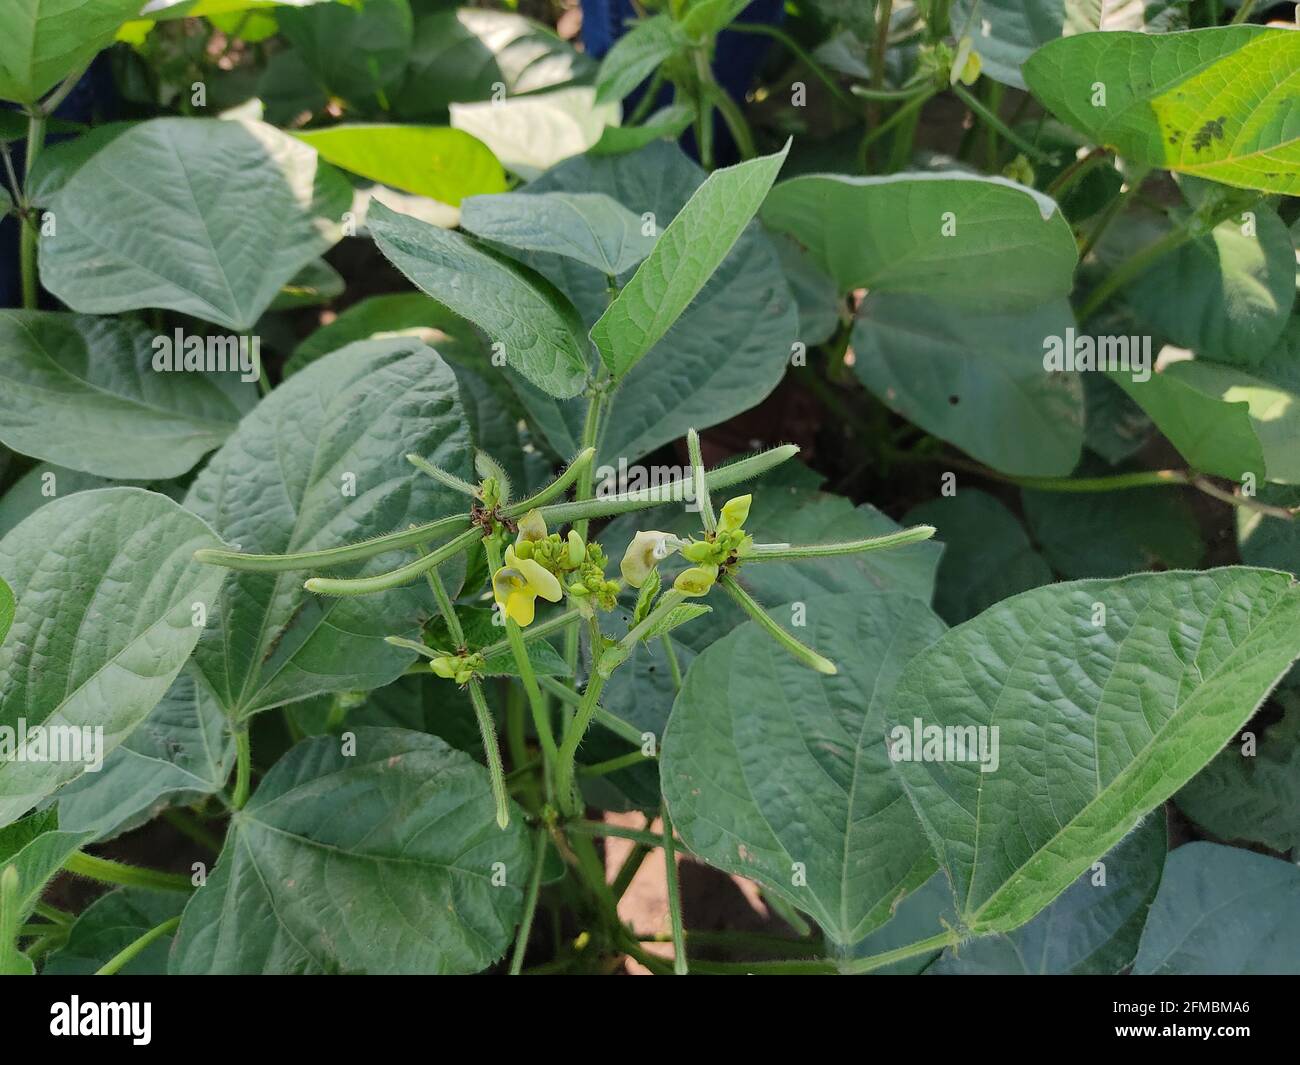 Grüne Mungbohnenkulturen aus nächster Nähe in der Landwirtschaft, grüne Mungbohnenschoten (Vigna radiata) und Mungbohnenblätter am Mungbohnenstiel Stockfoto